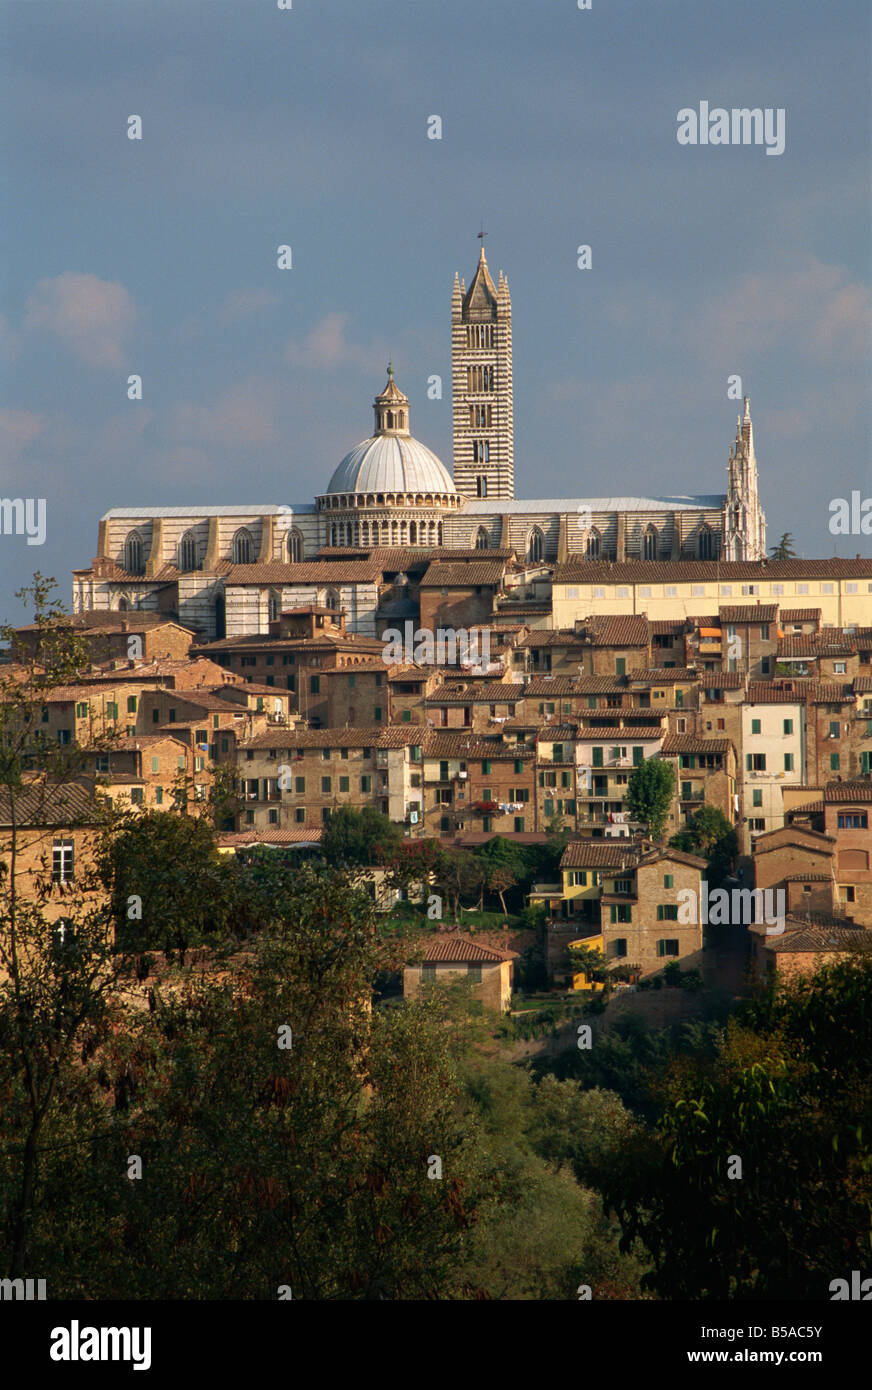 El horizonte de Siena Toscana Italia R Rainford Foto de stock